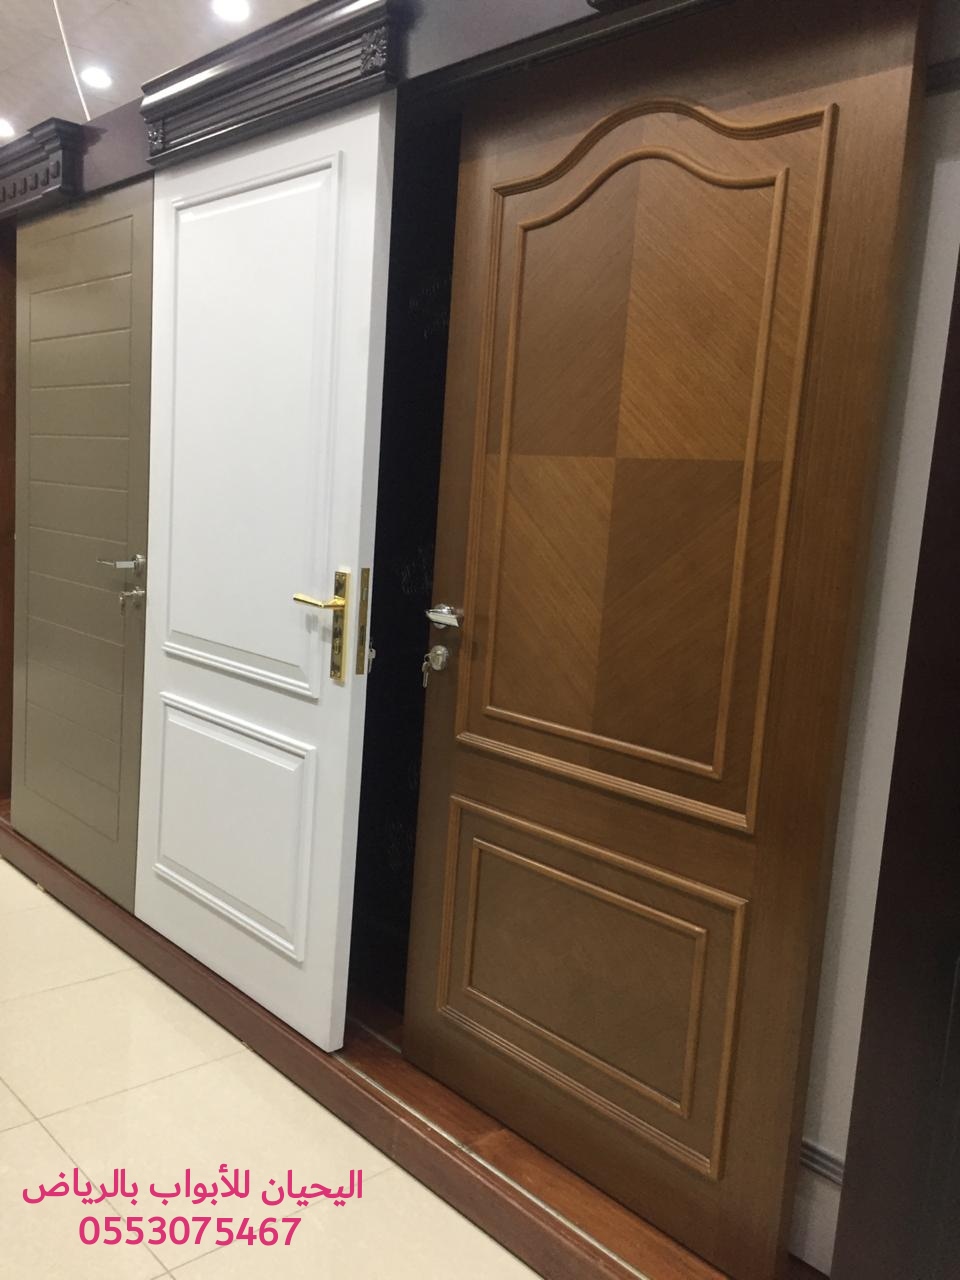 اليحيان لتصنيع وتفصيل أبواب خشب بالرياض 0553075467 أبواب حديد للبيع في الرياض،ابواب ليزر للبيع بالرياض P_1550ifh0l2